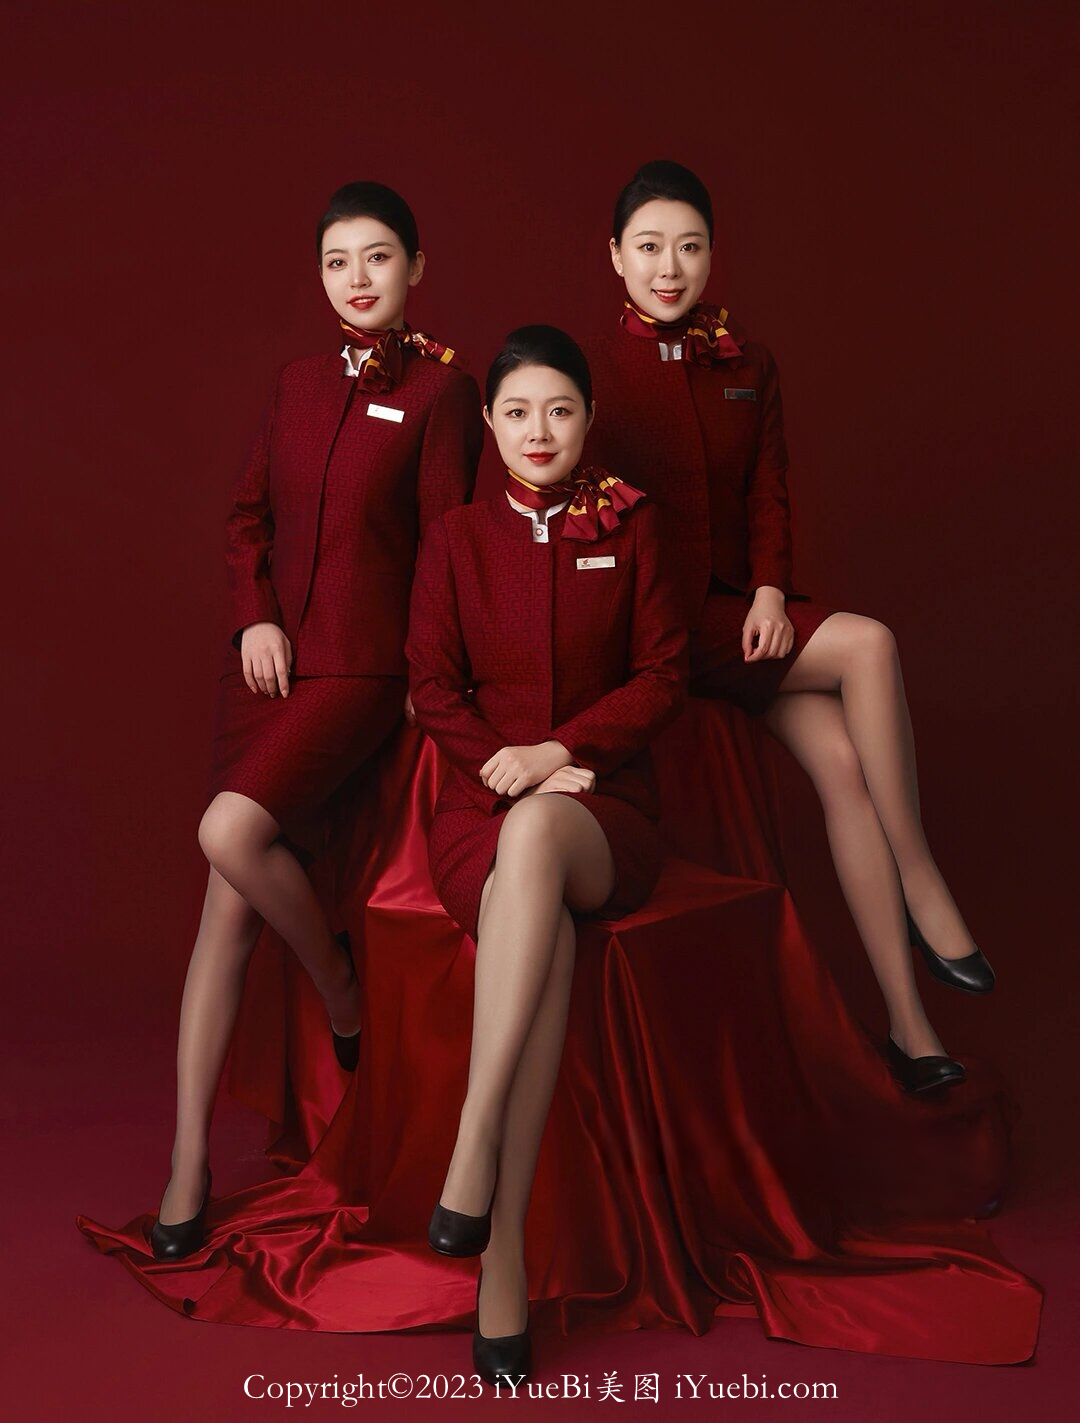 中国国际航空三个熟女少妇空姐写真照